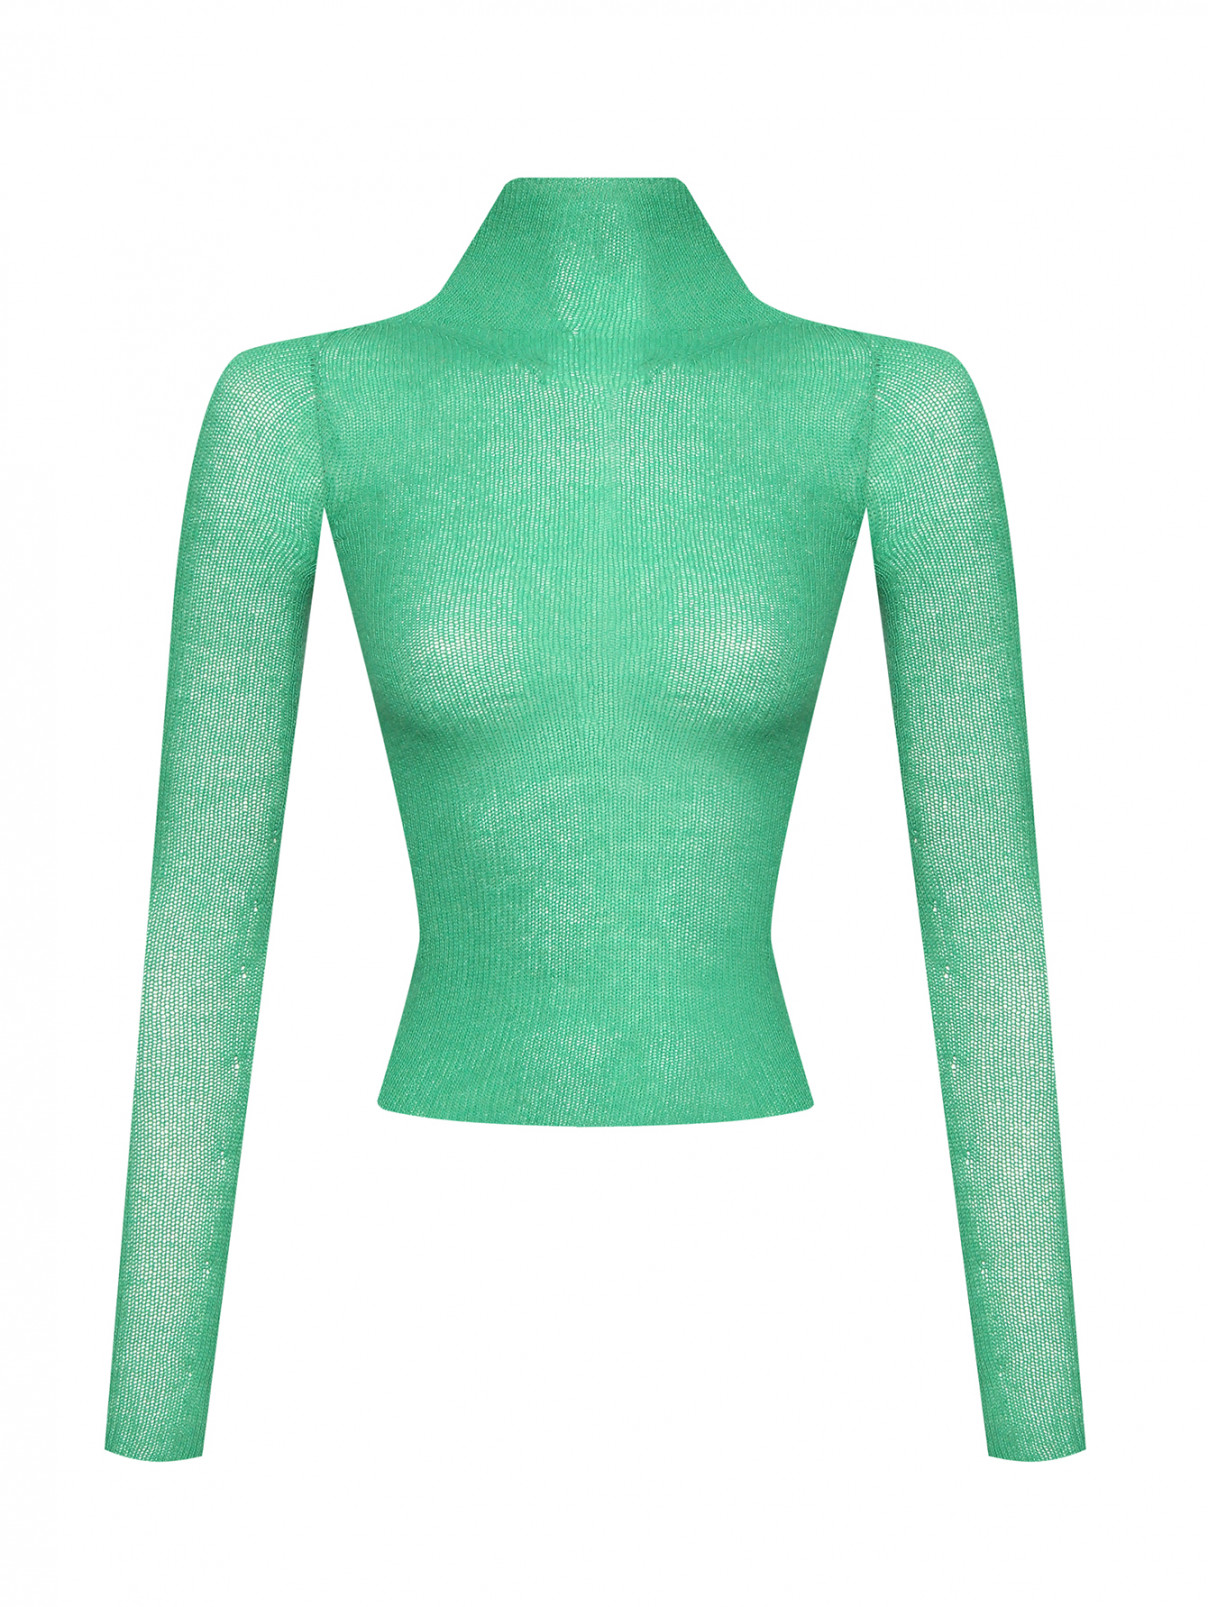 Однотонная водолазка из шерсти и кашемира Philosophy di Lorenzo Serafini  –  Общий вид  – Цвет:  Зеленый